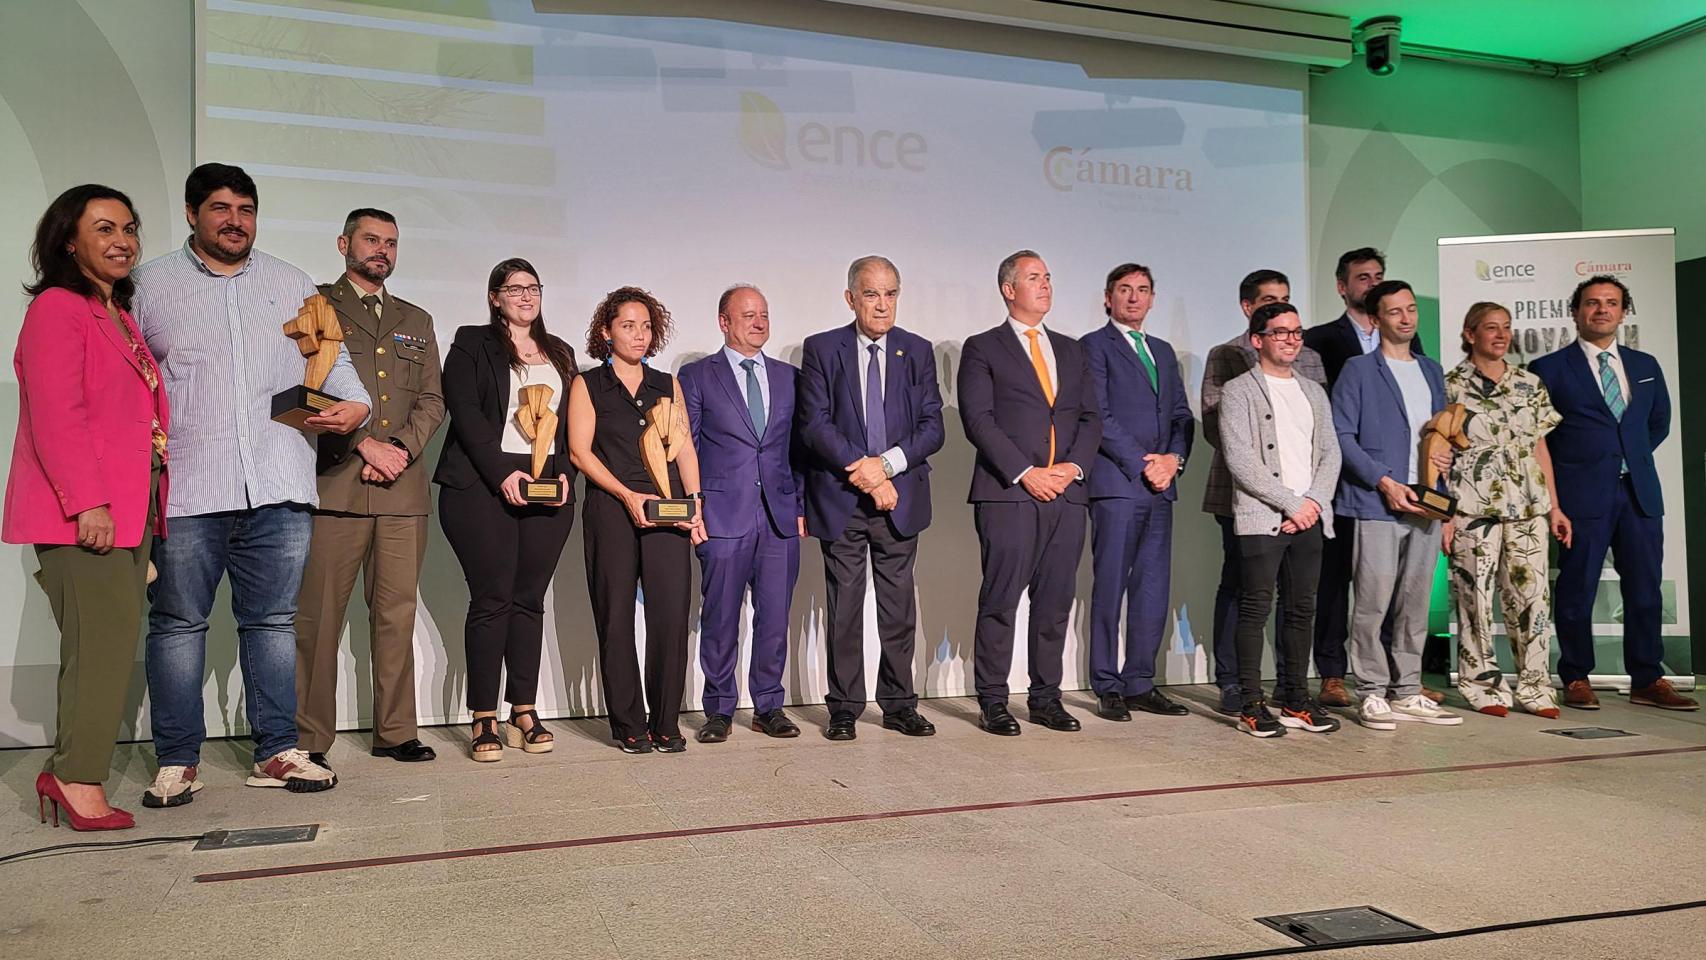 IV Premio Cámara de Comercio – Ence a la Innovación Forestal.